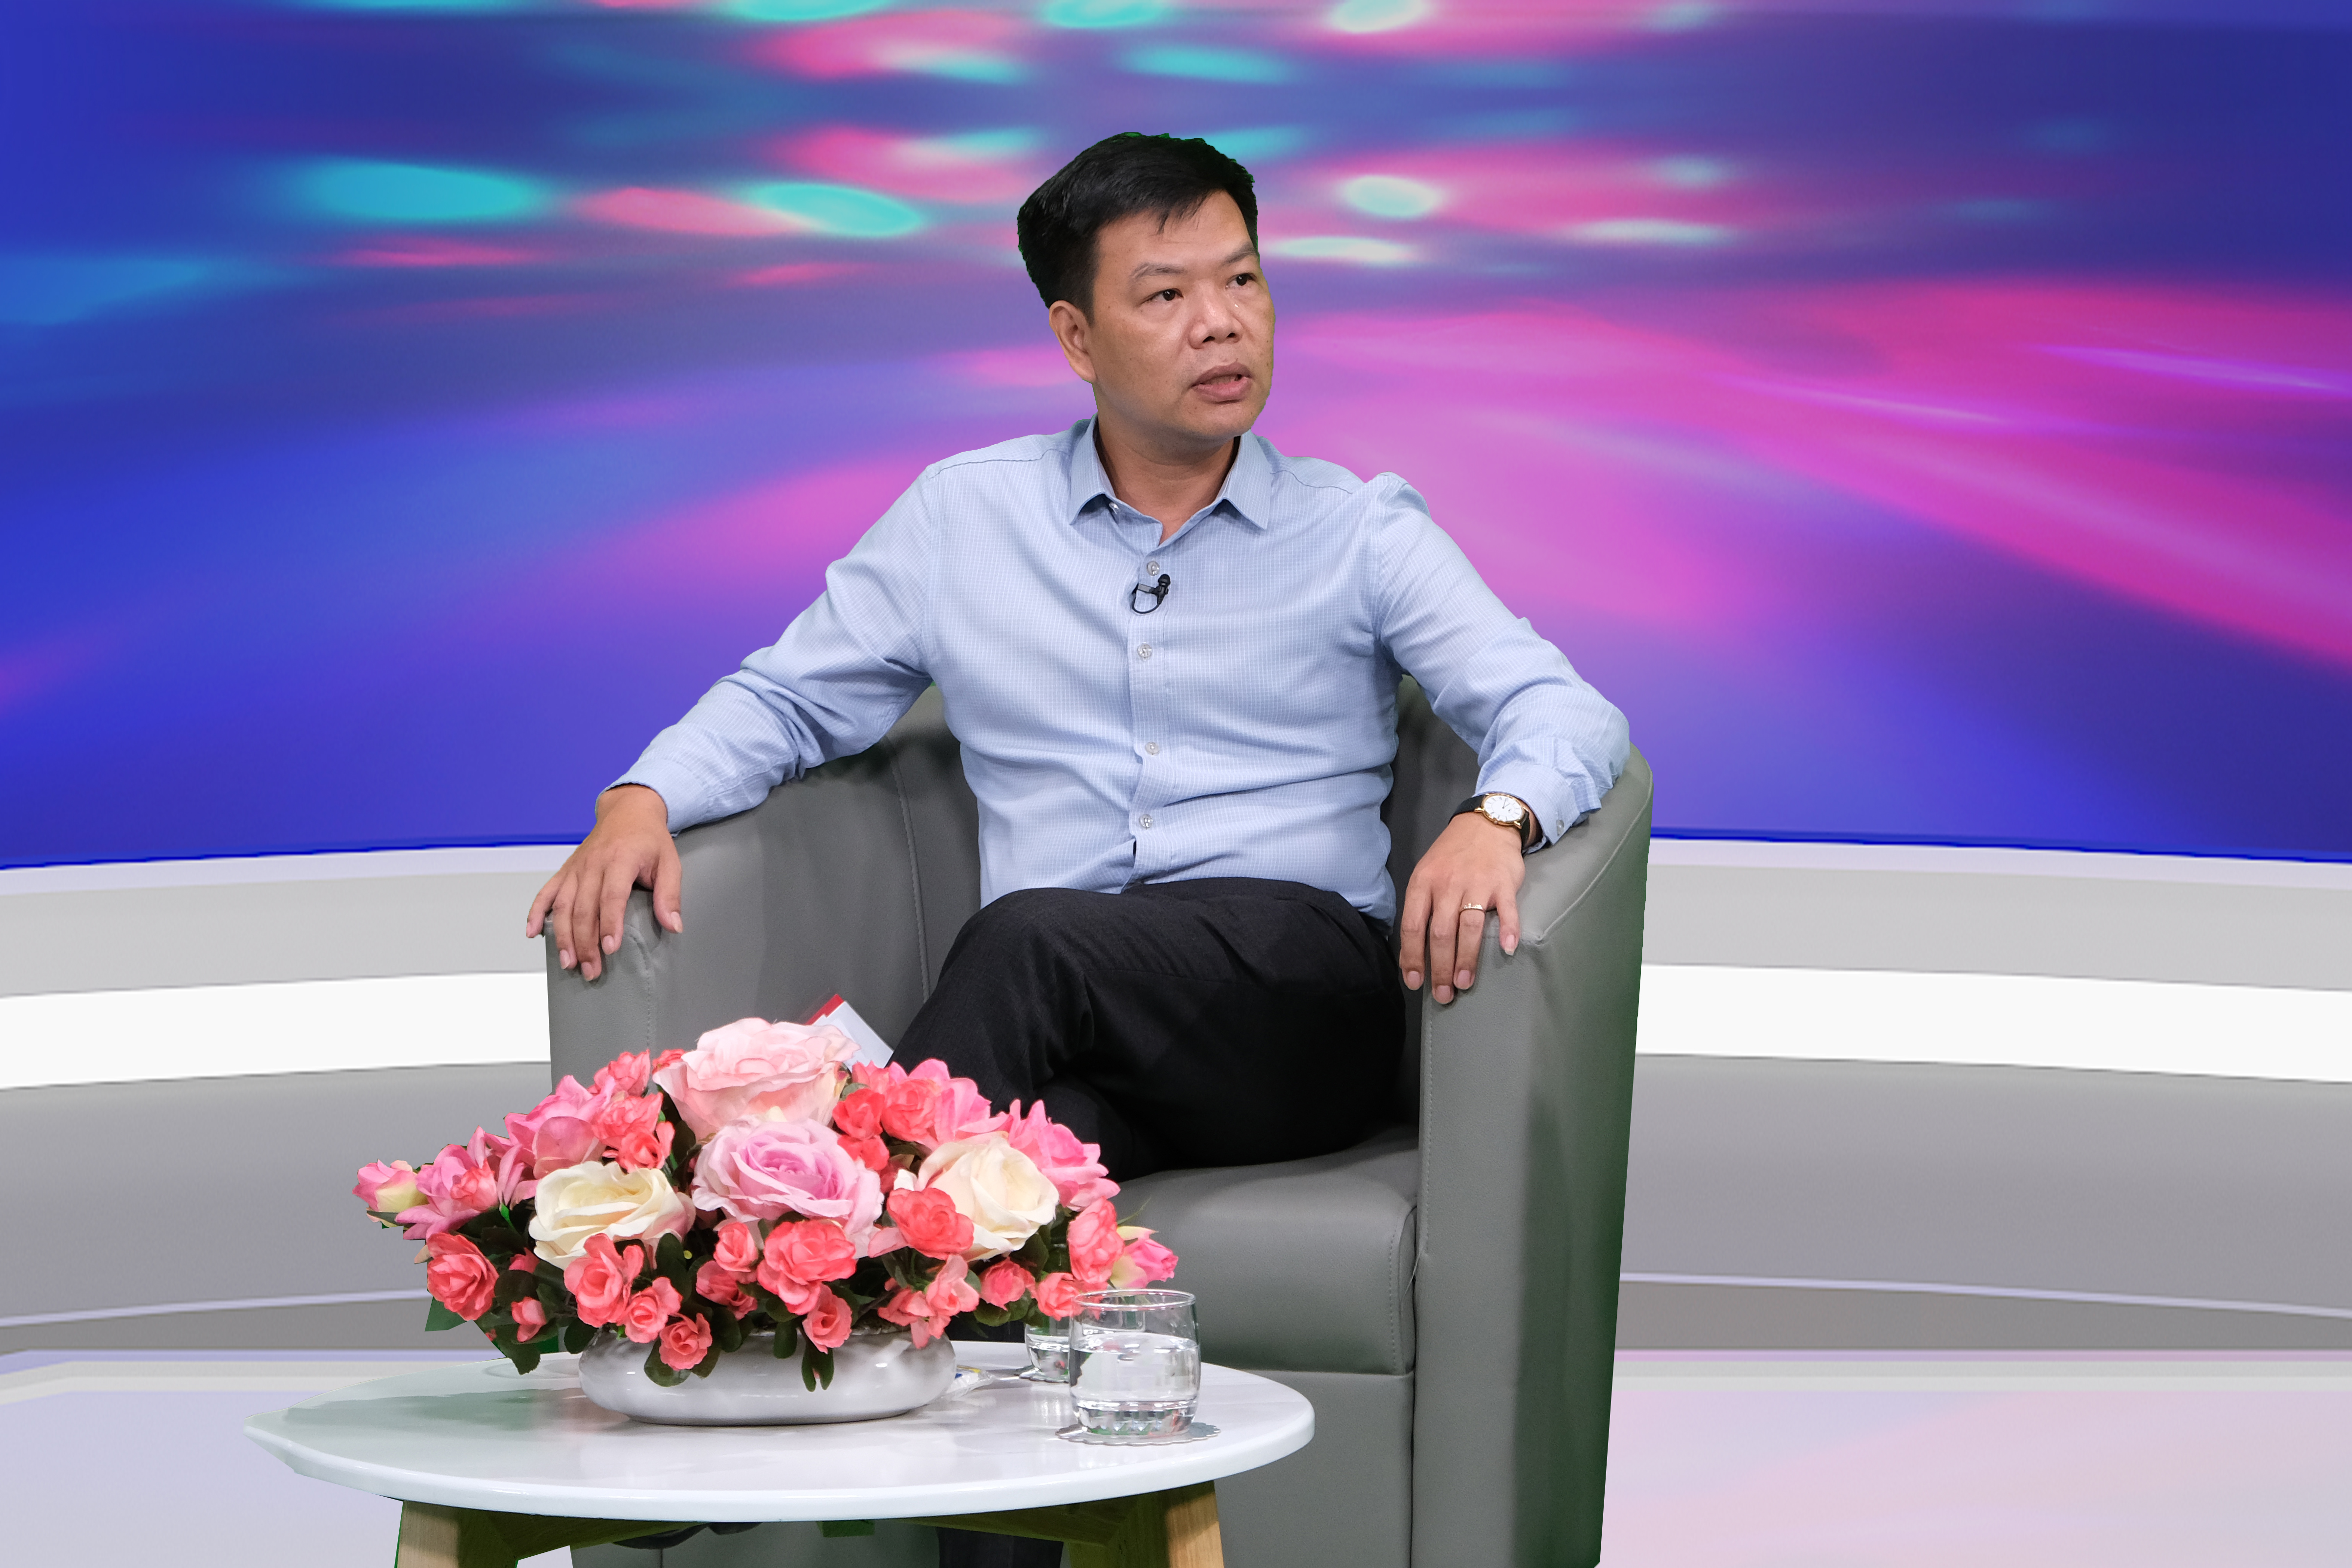 Trưởng phòng quản lý hoạt động thương mại điện tử, Cục Thương mại điện tử và kinh tế số (Bộ Công Thương), Nguyễn Hữu Tuấn